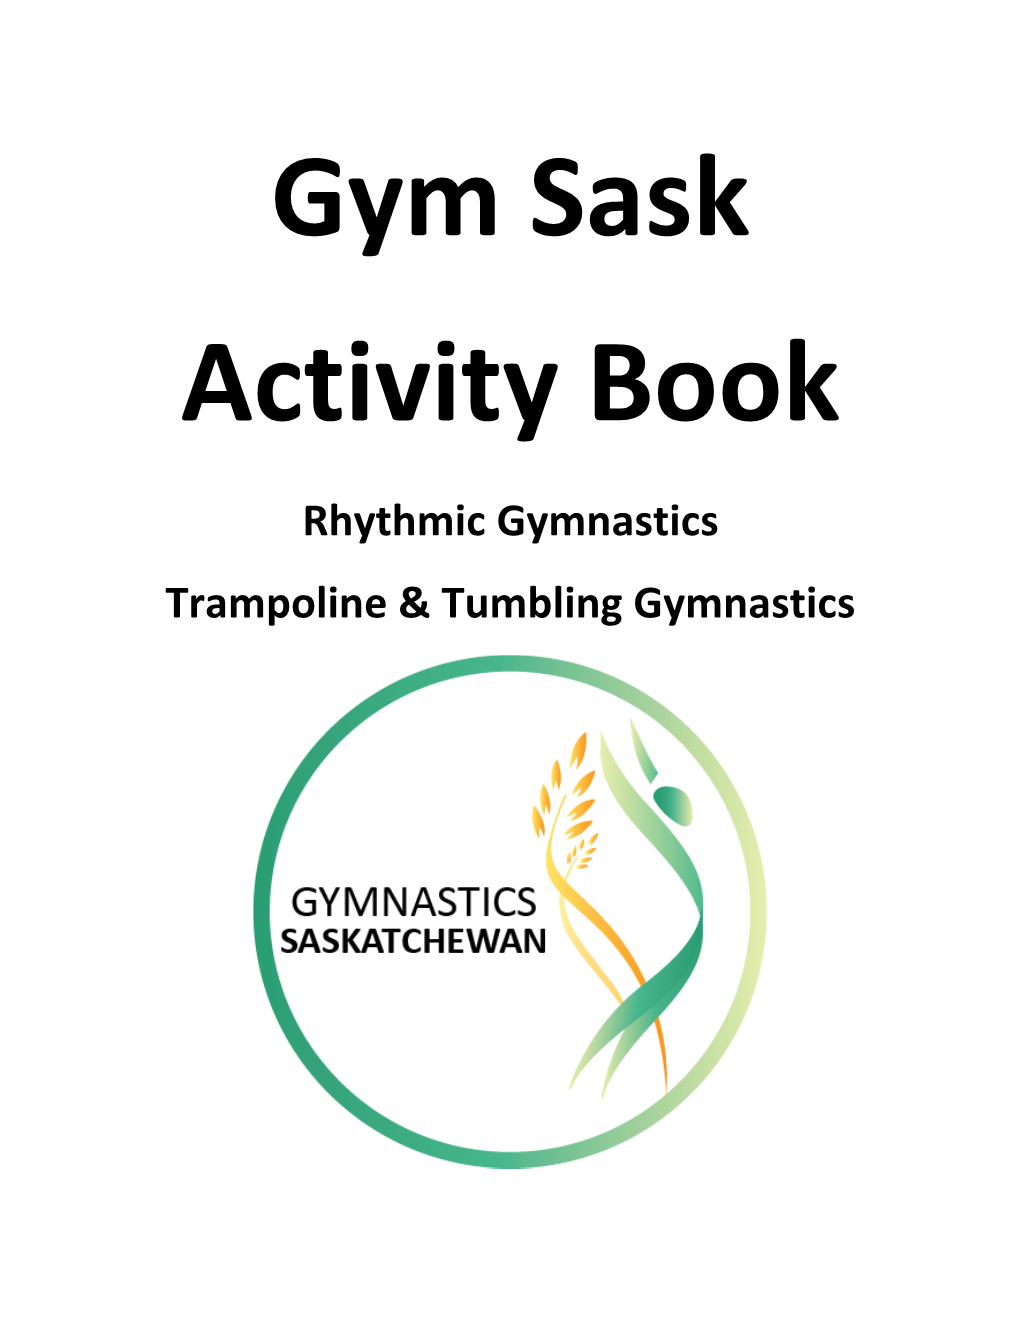 Rhythmic Gymnastics Trampoline & Tumbling Gymnastics